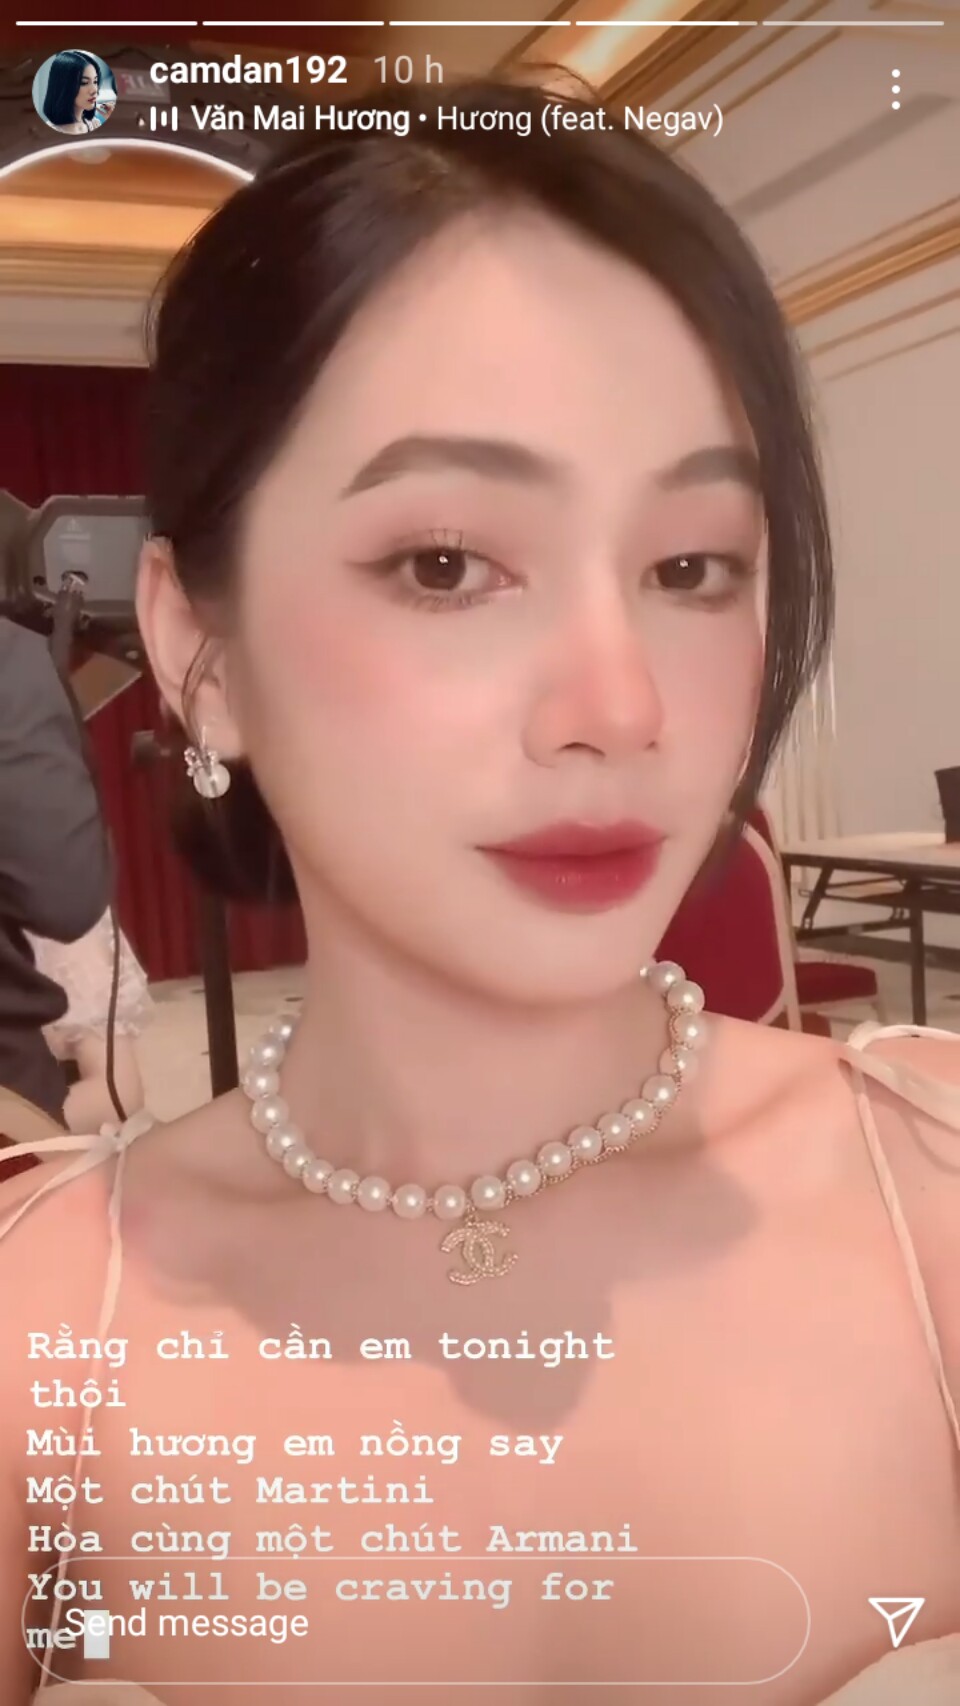 Cẩm Đan khoe nhan sắc thời được khen xinh nhất Hoa hậu Việt Nam 2020 - Ảnh 2